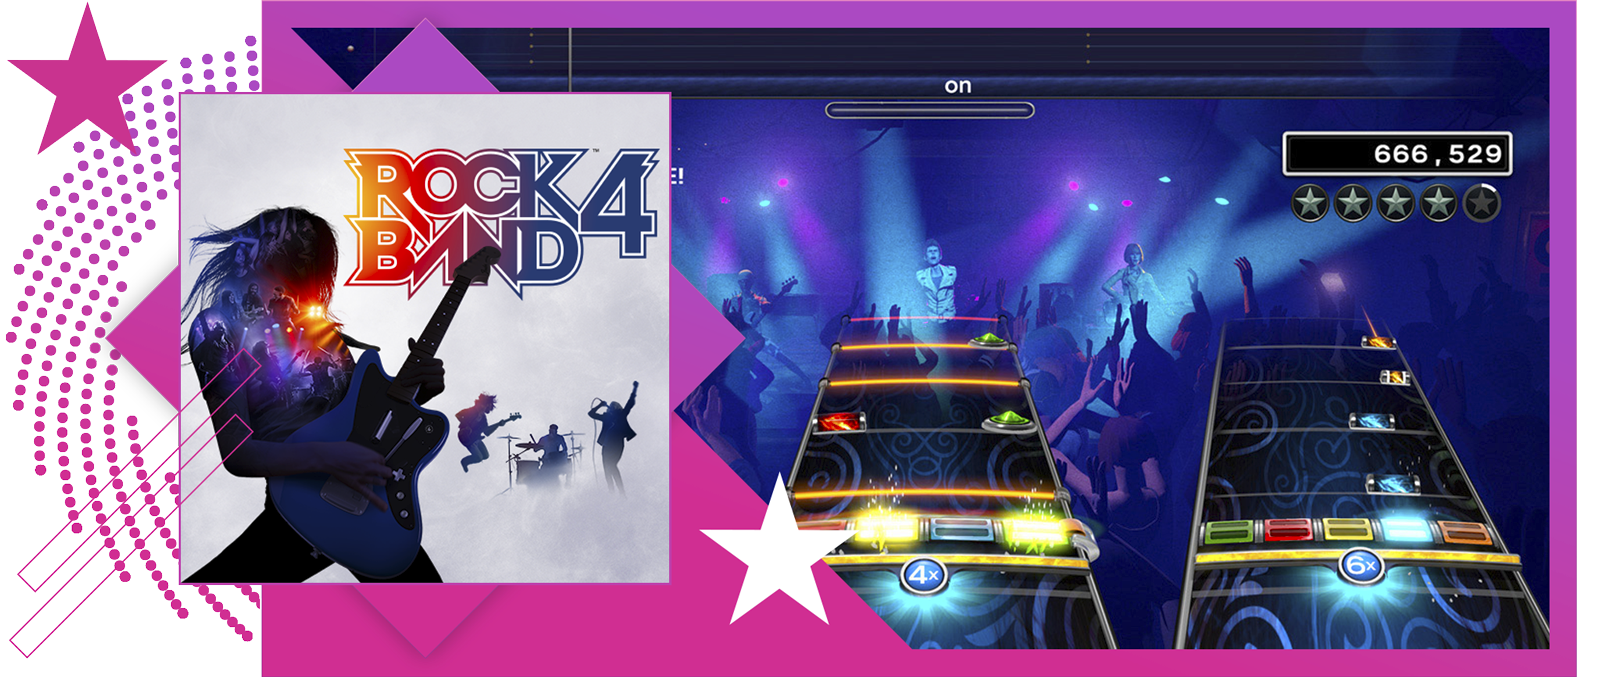 Najbolje ritmičke igre, naslovna slika s glavnom ilustracijom i igranjem igre Rock Band 4.